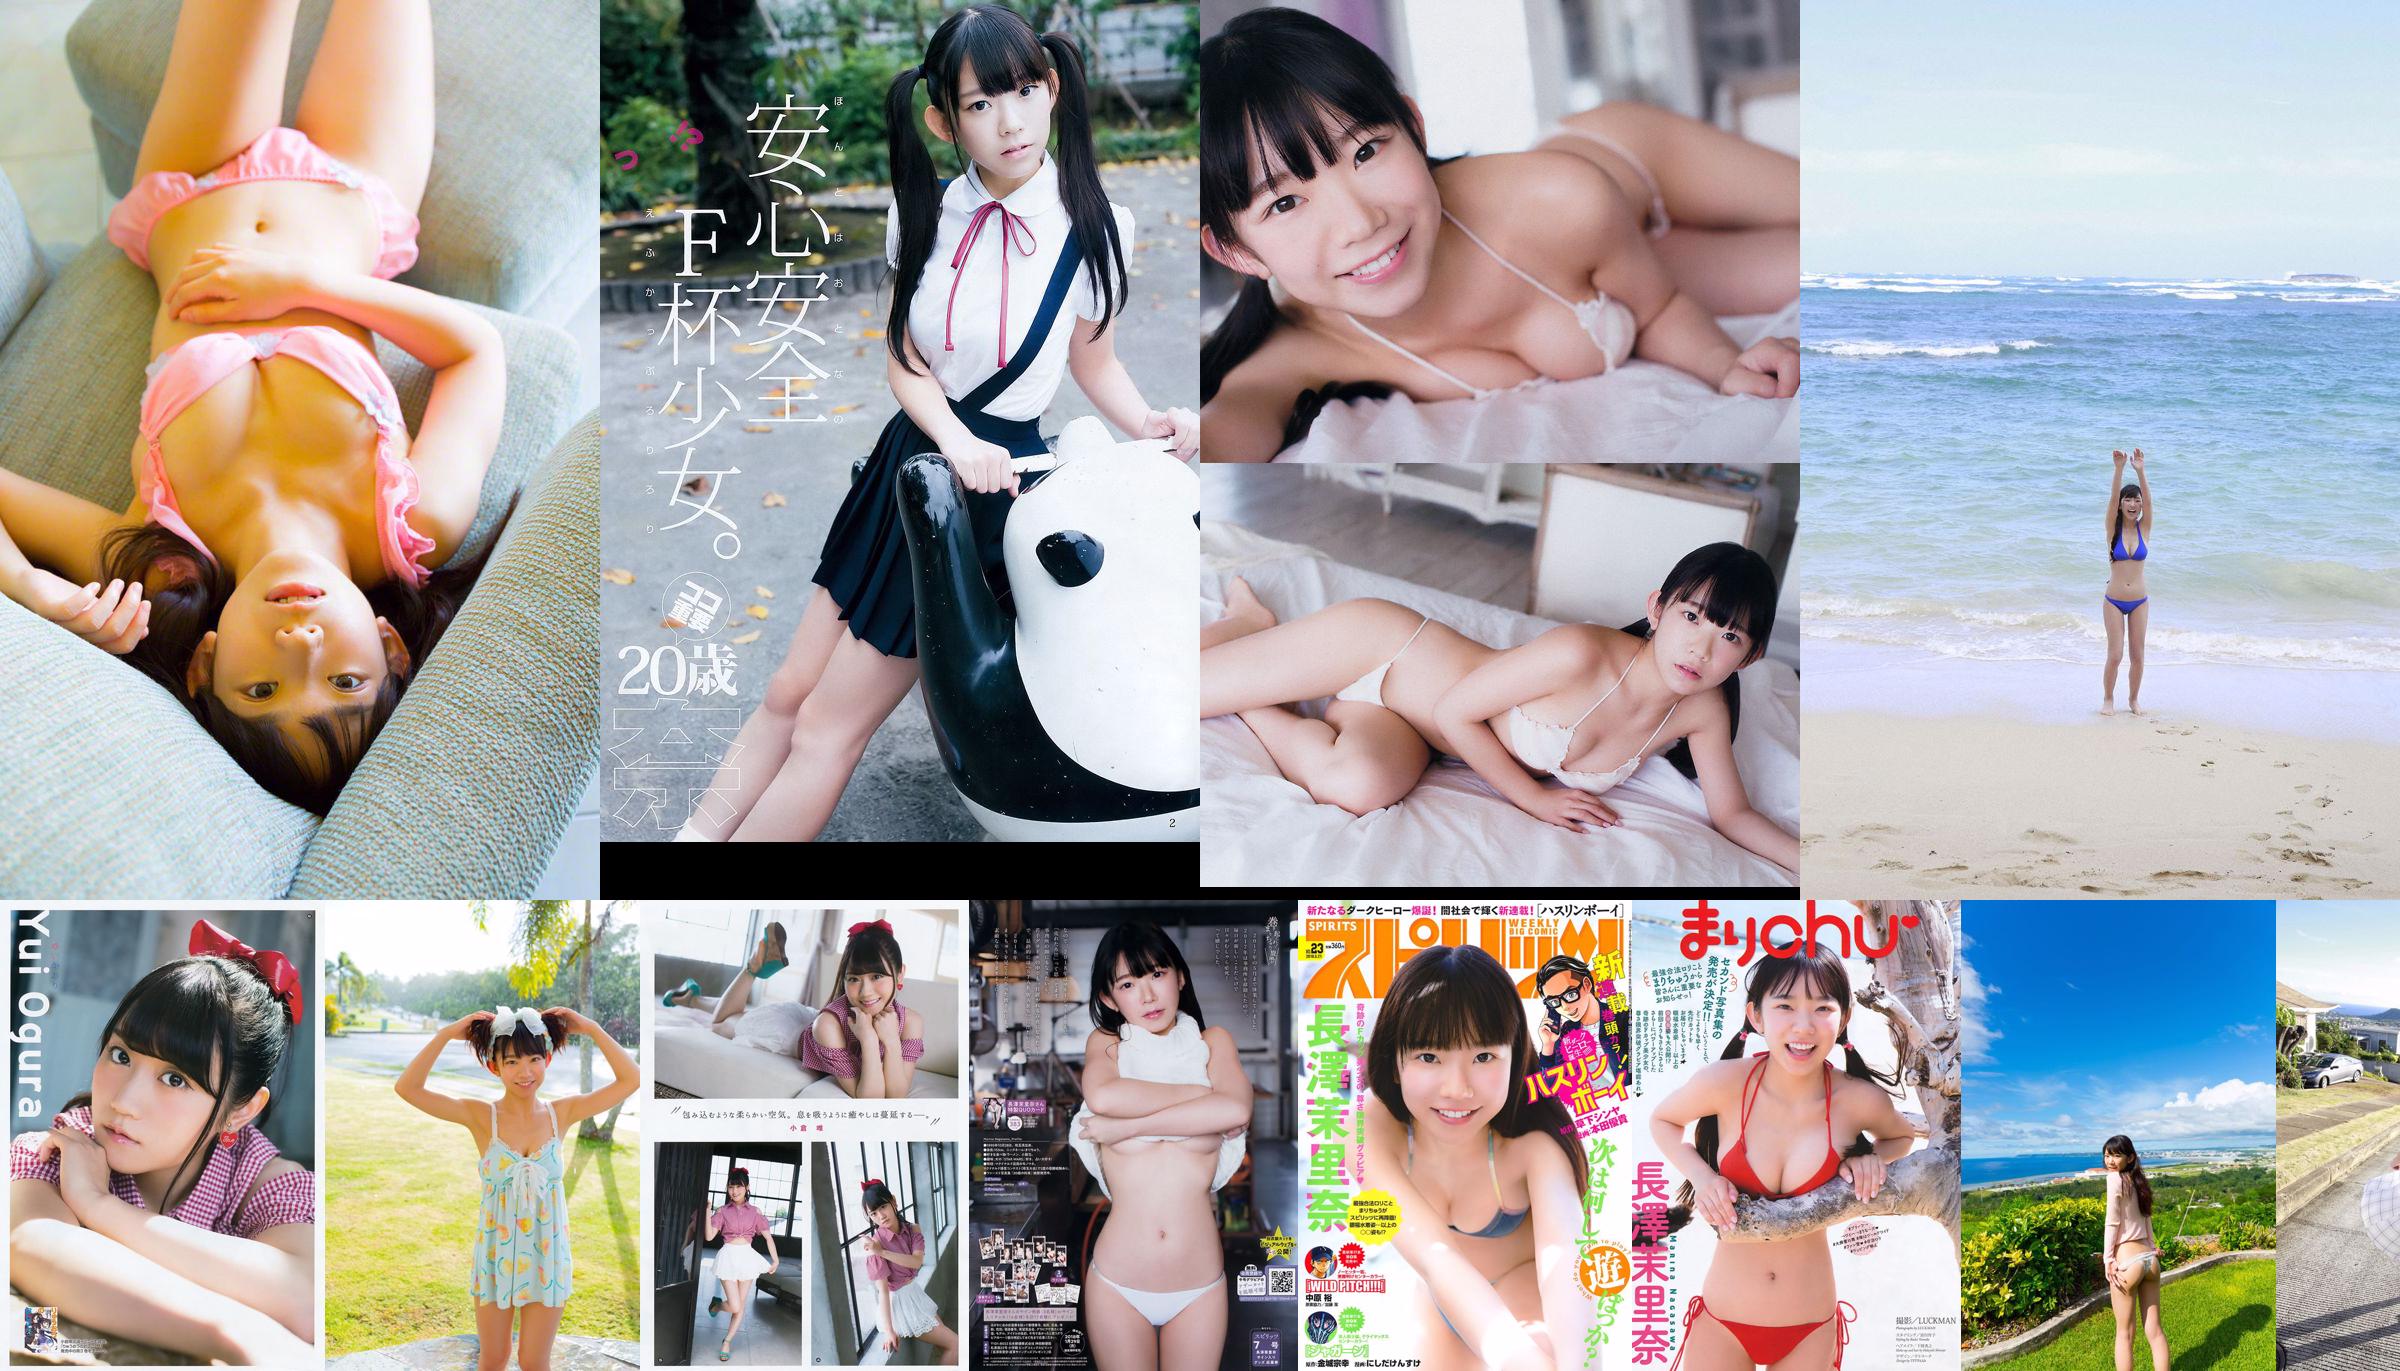 [WPB-net] Extra No. 584 Marina Nagasawa Nagasawa Morina "Bah っ て き た Legal Rory Big Tits!! ความรู้สึกผิด" No.7be770 หน้า 9